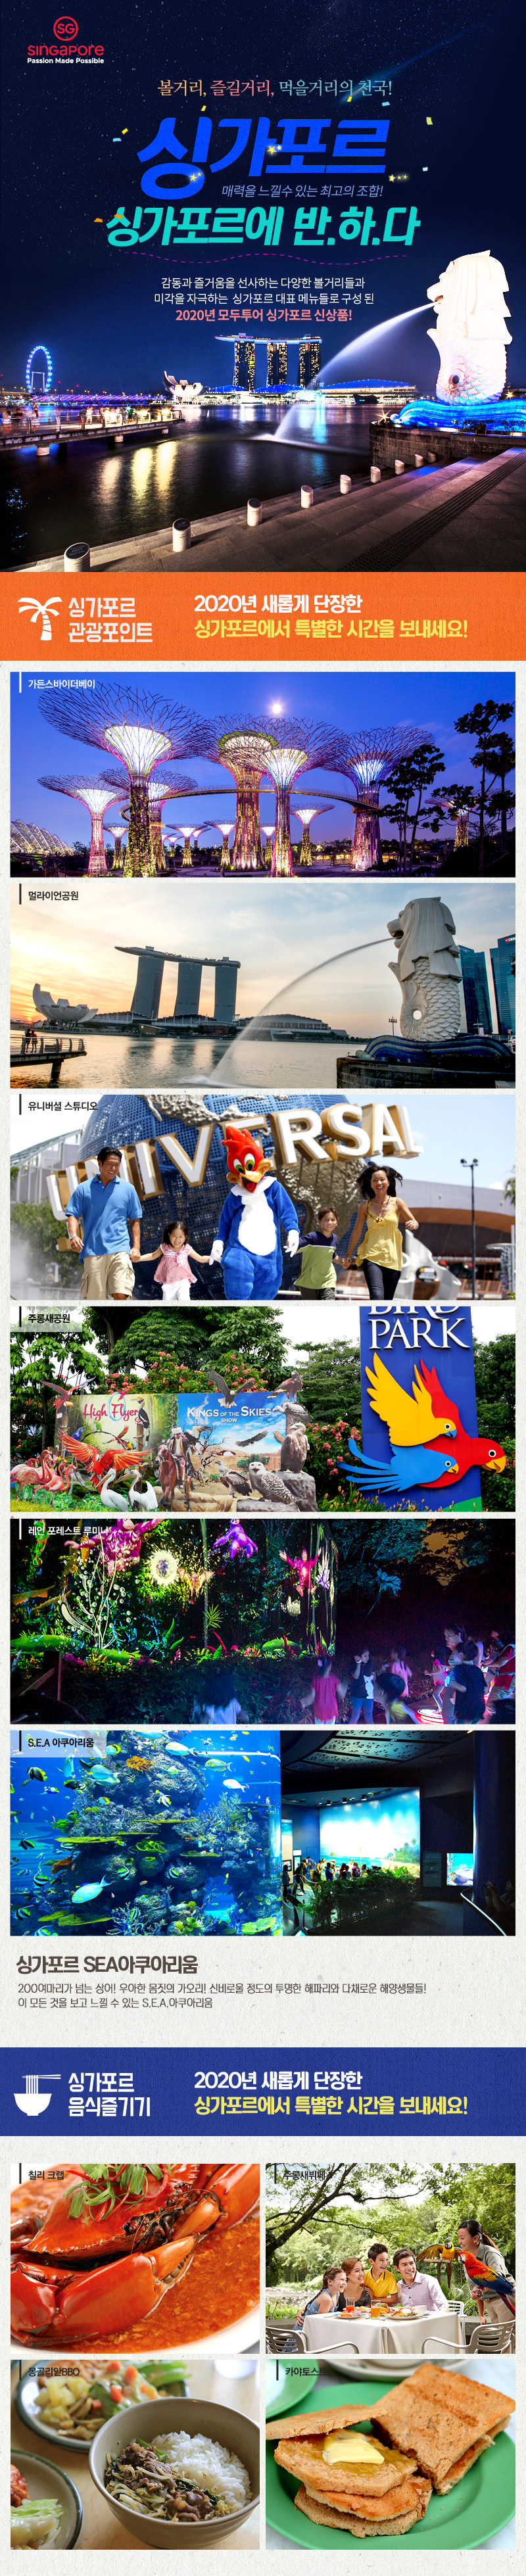 싱가포르 자유여행의 모든것! 모두투어, 아시아나항공, 싱가포르 관광청이 모여 만든 자유여행을 위한 최고의 조합